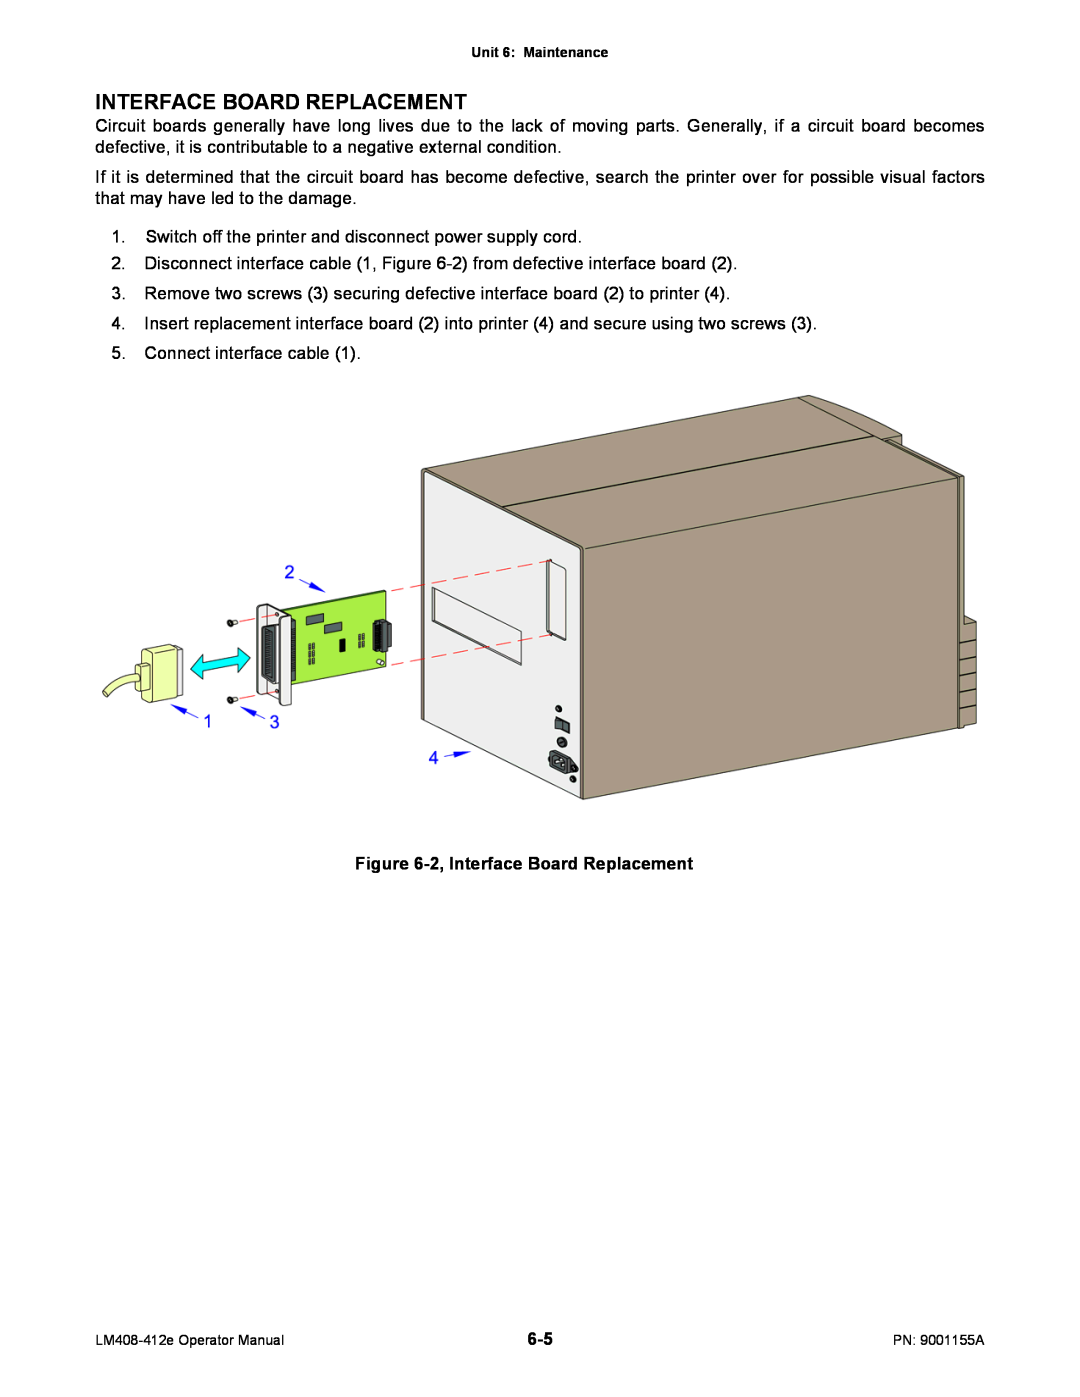 SATO LM408/412E manual 2, Interface Board Replacement 